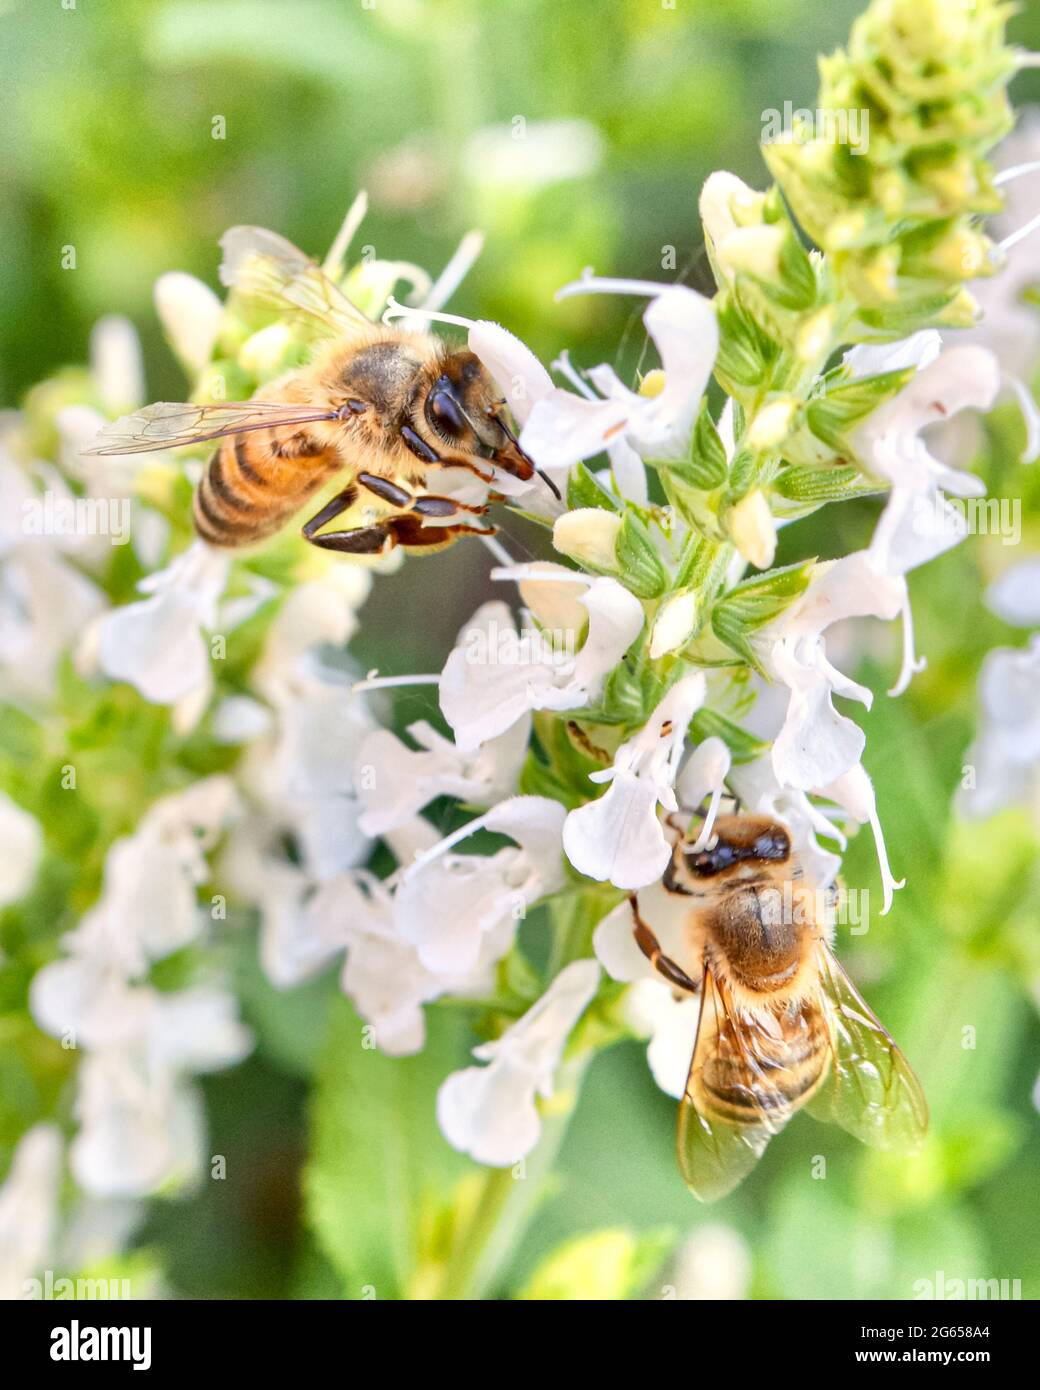 Gros plan de deux abeilles domestiques (APIs mellifera) qui se forgent pour le nectar et le pollen sur les délicates fleurs blanches de la salvia. Copier l'espace. Banque D'Images